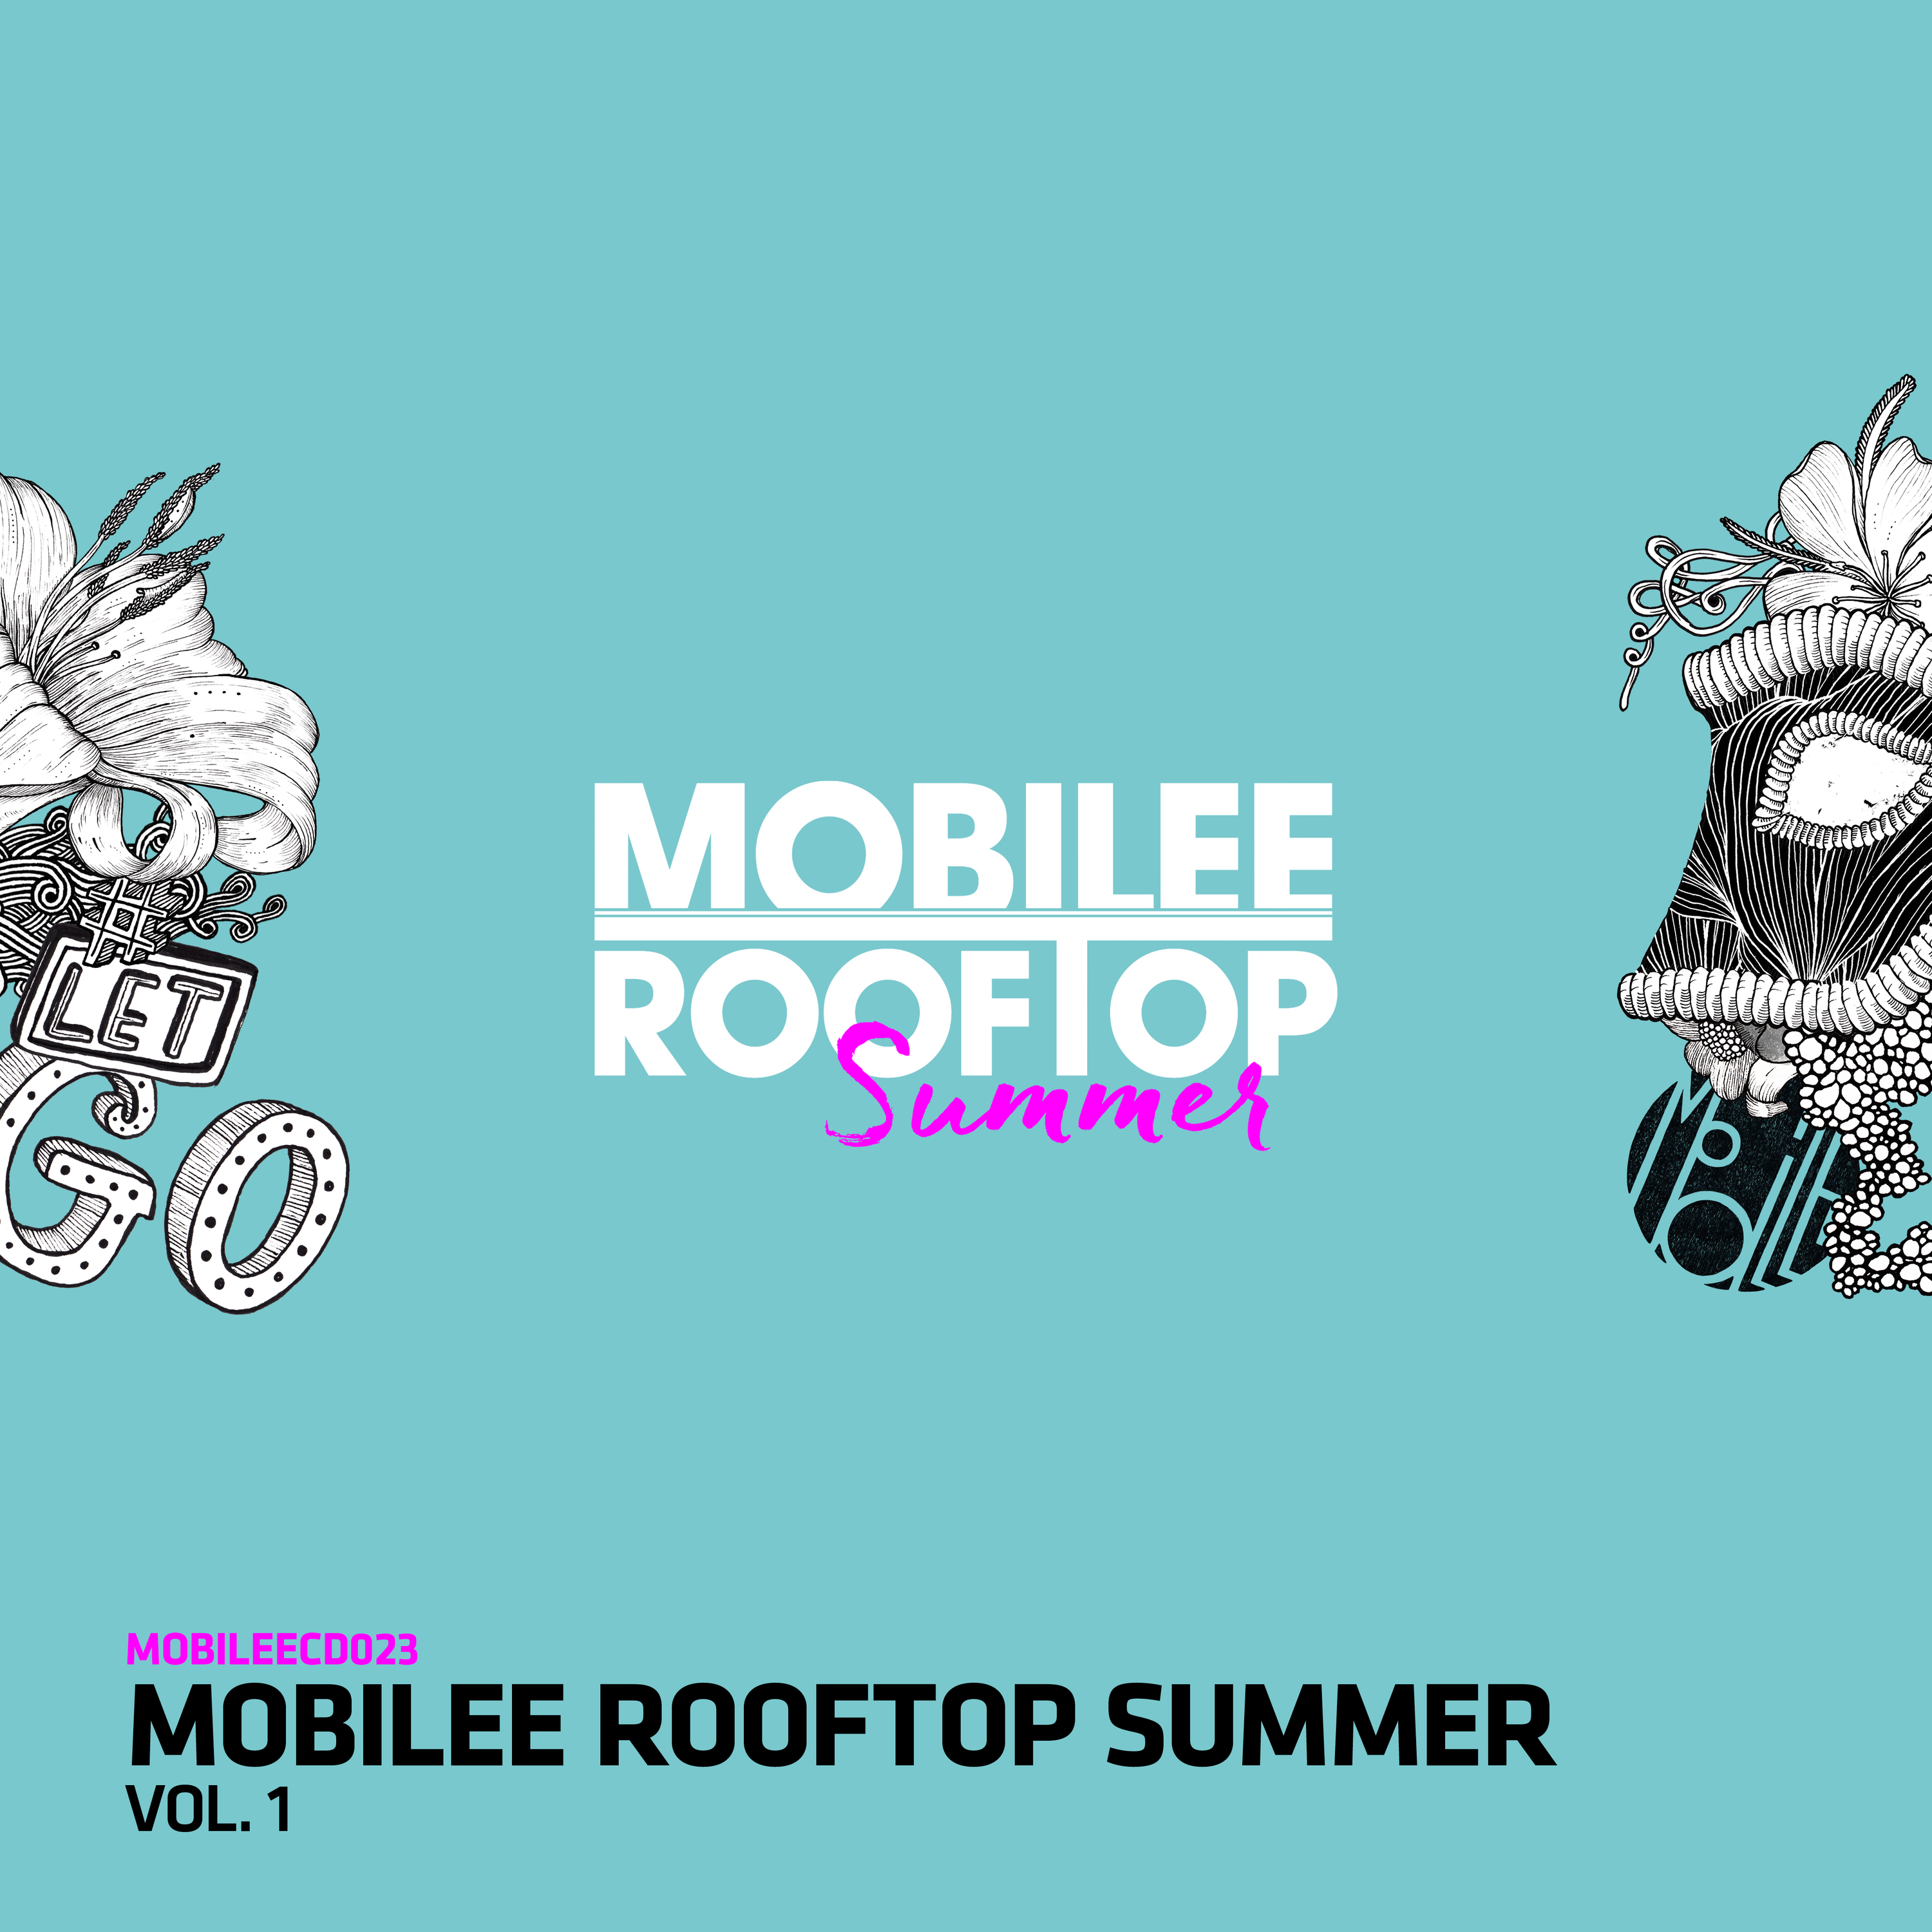 Mobilee Rooftop Summer Vol. 1